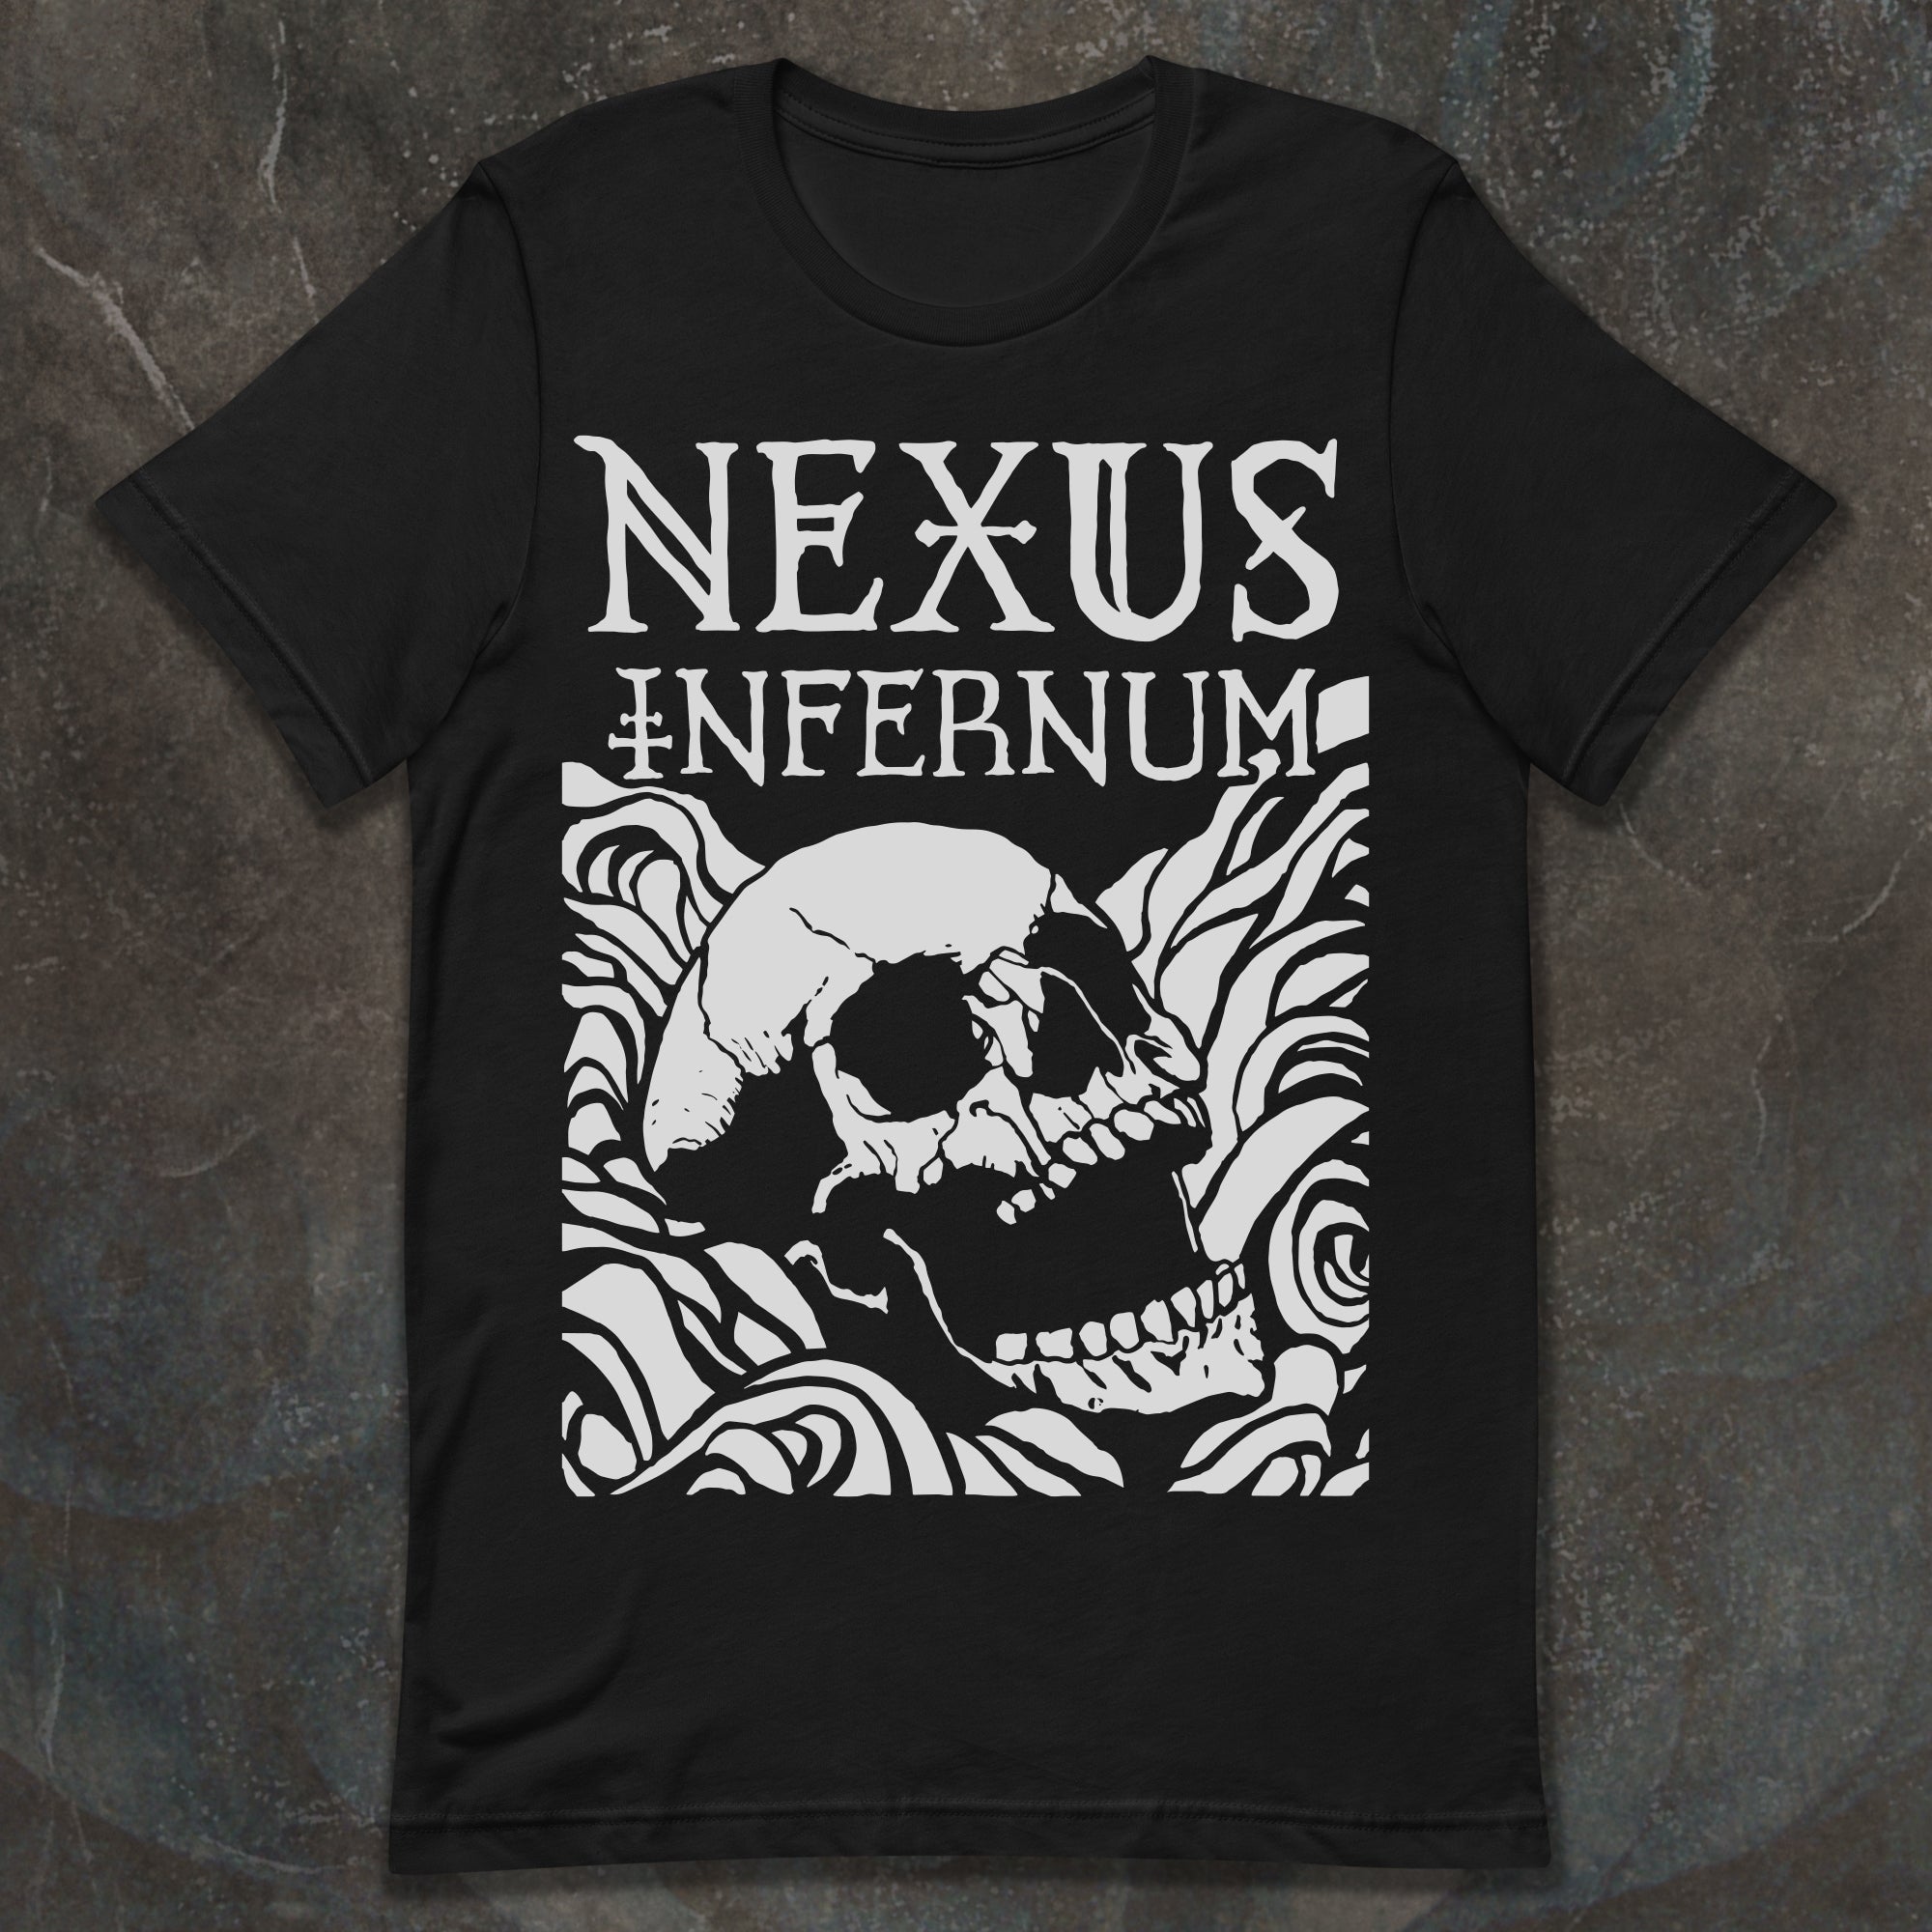 Nexus Infernum T-Shirt from Archon Games. Artwork by Adam Watts